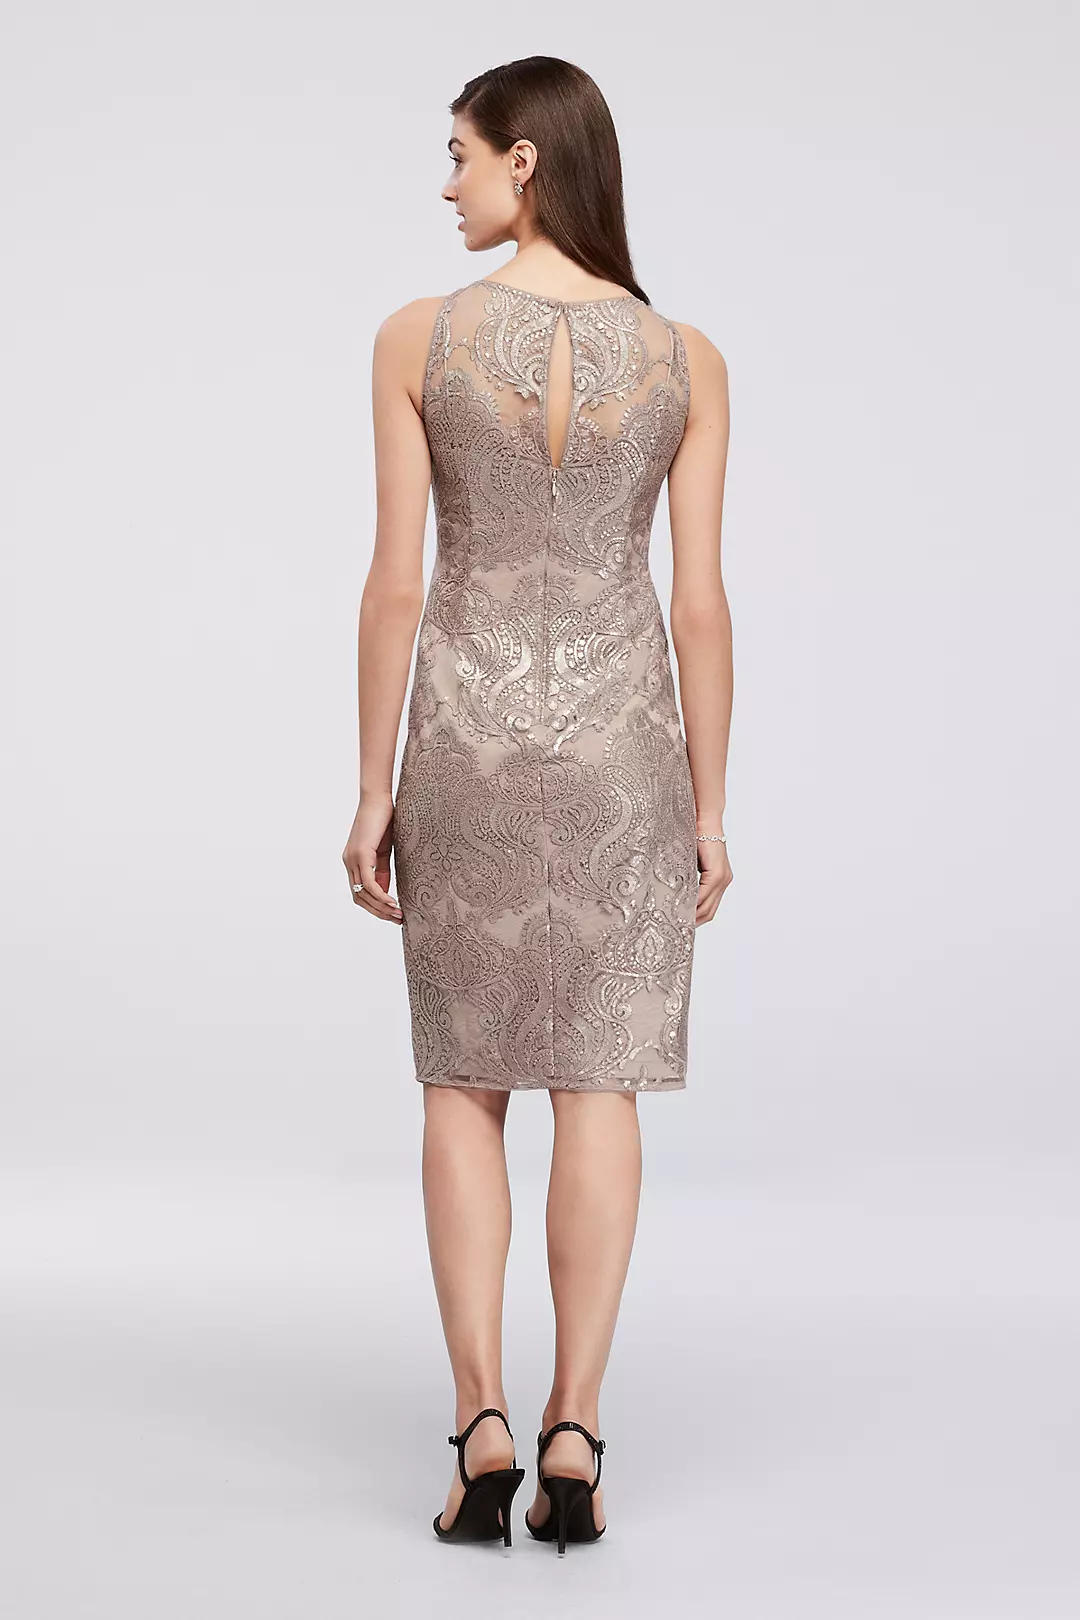 Baroque Sequin Lace Short Dress Image 2